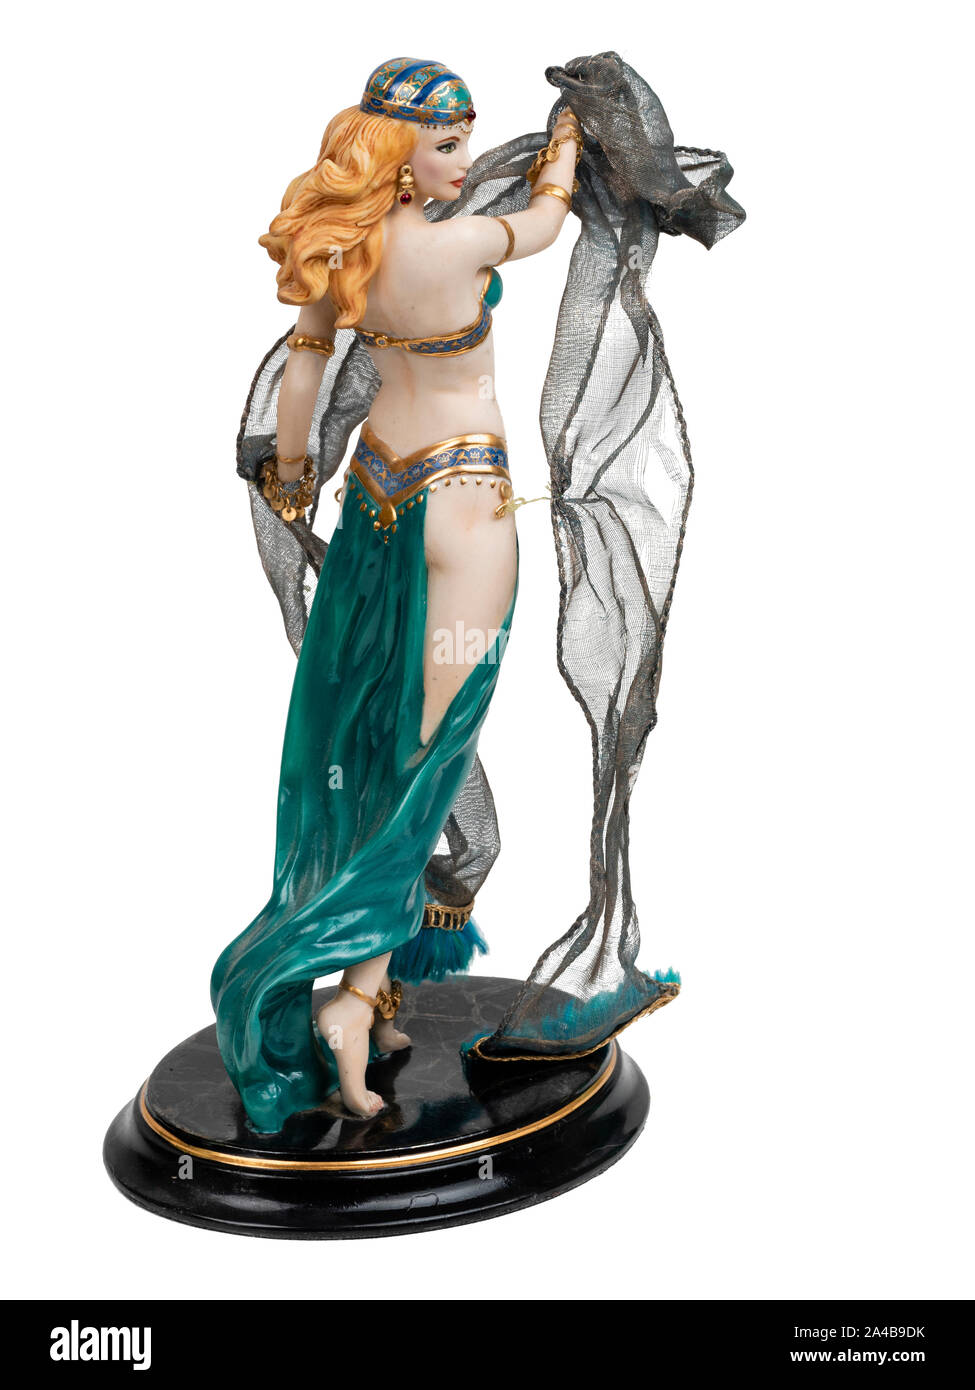 Modelo de porcelana pintada a mano figurilla de Salomé y la danza de los siete velos sobre un fondo blanco. Foto de stock